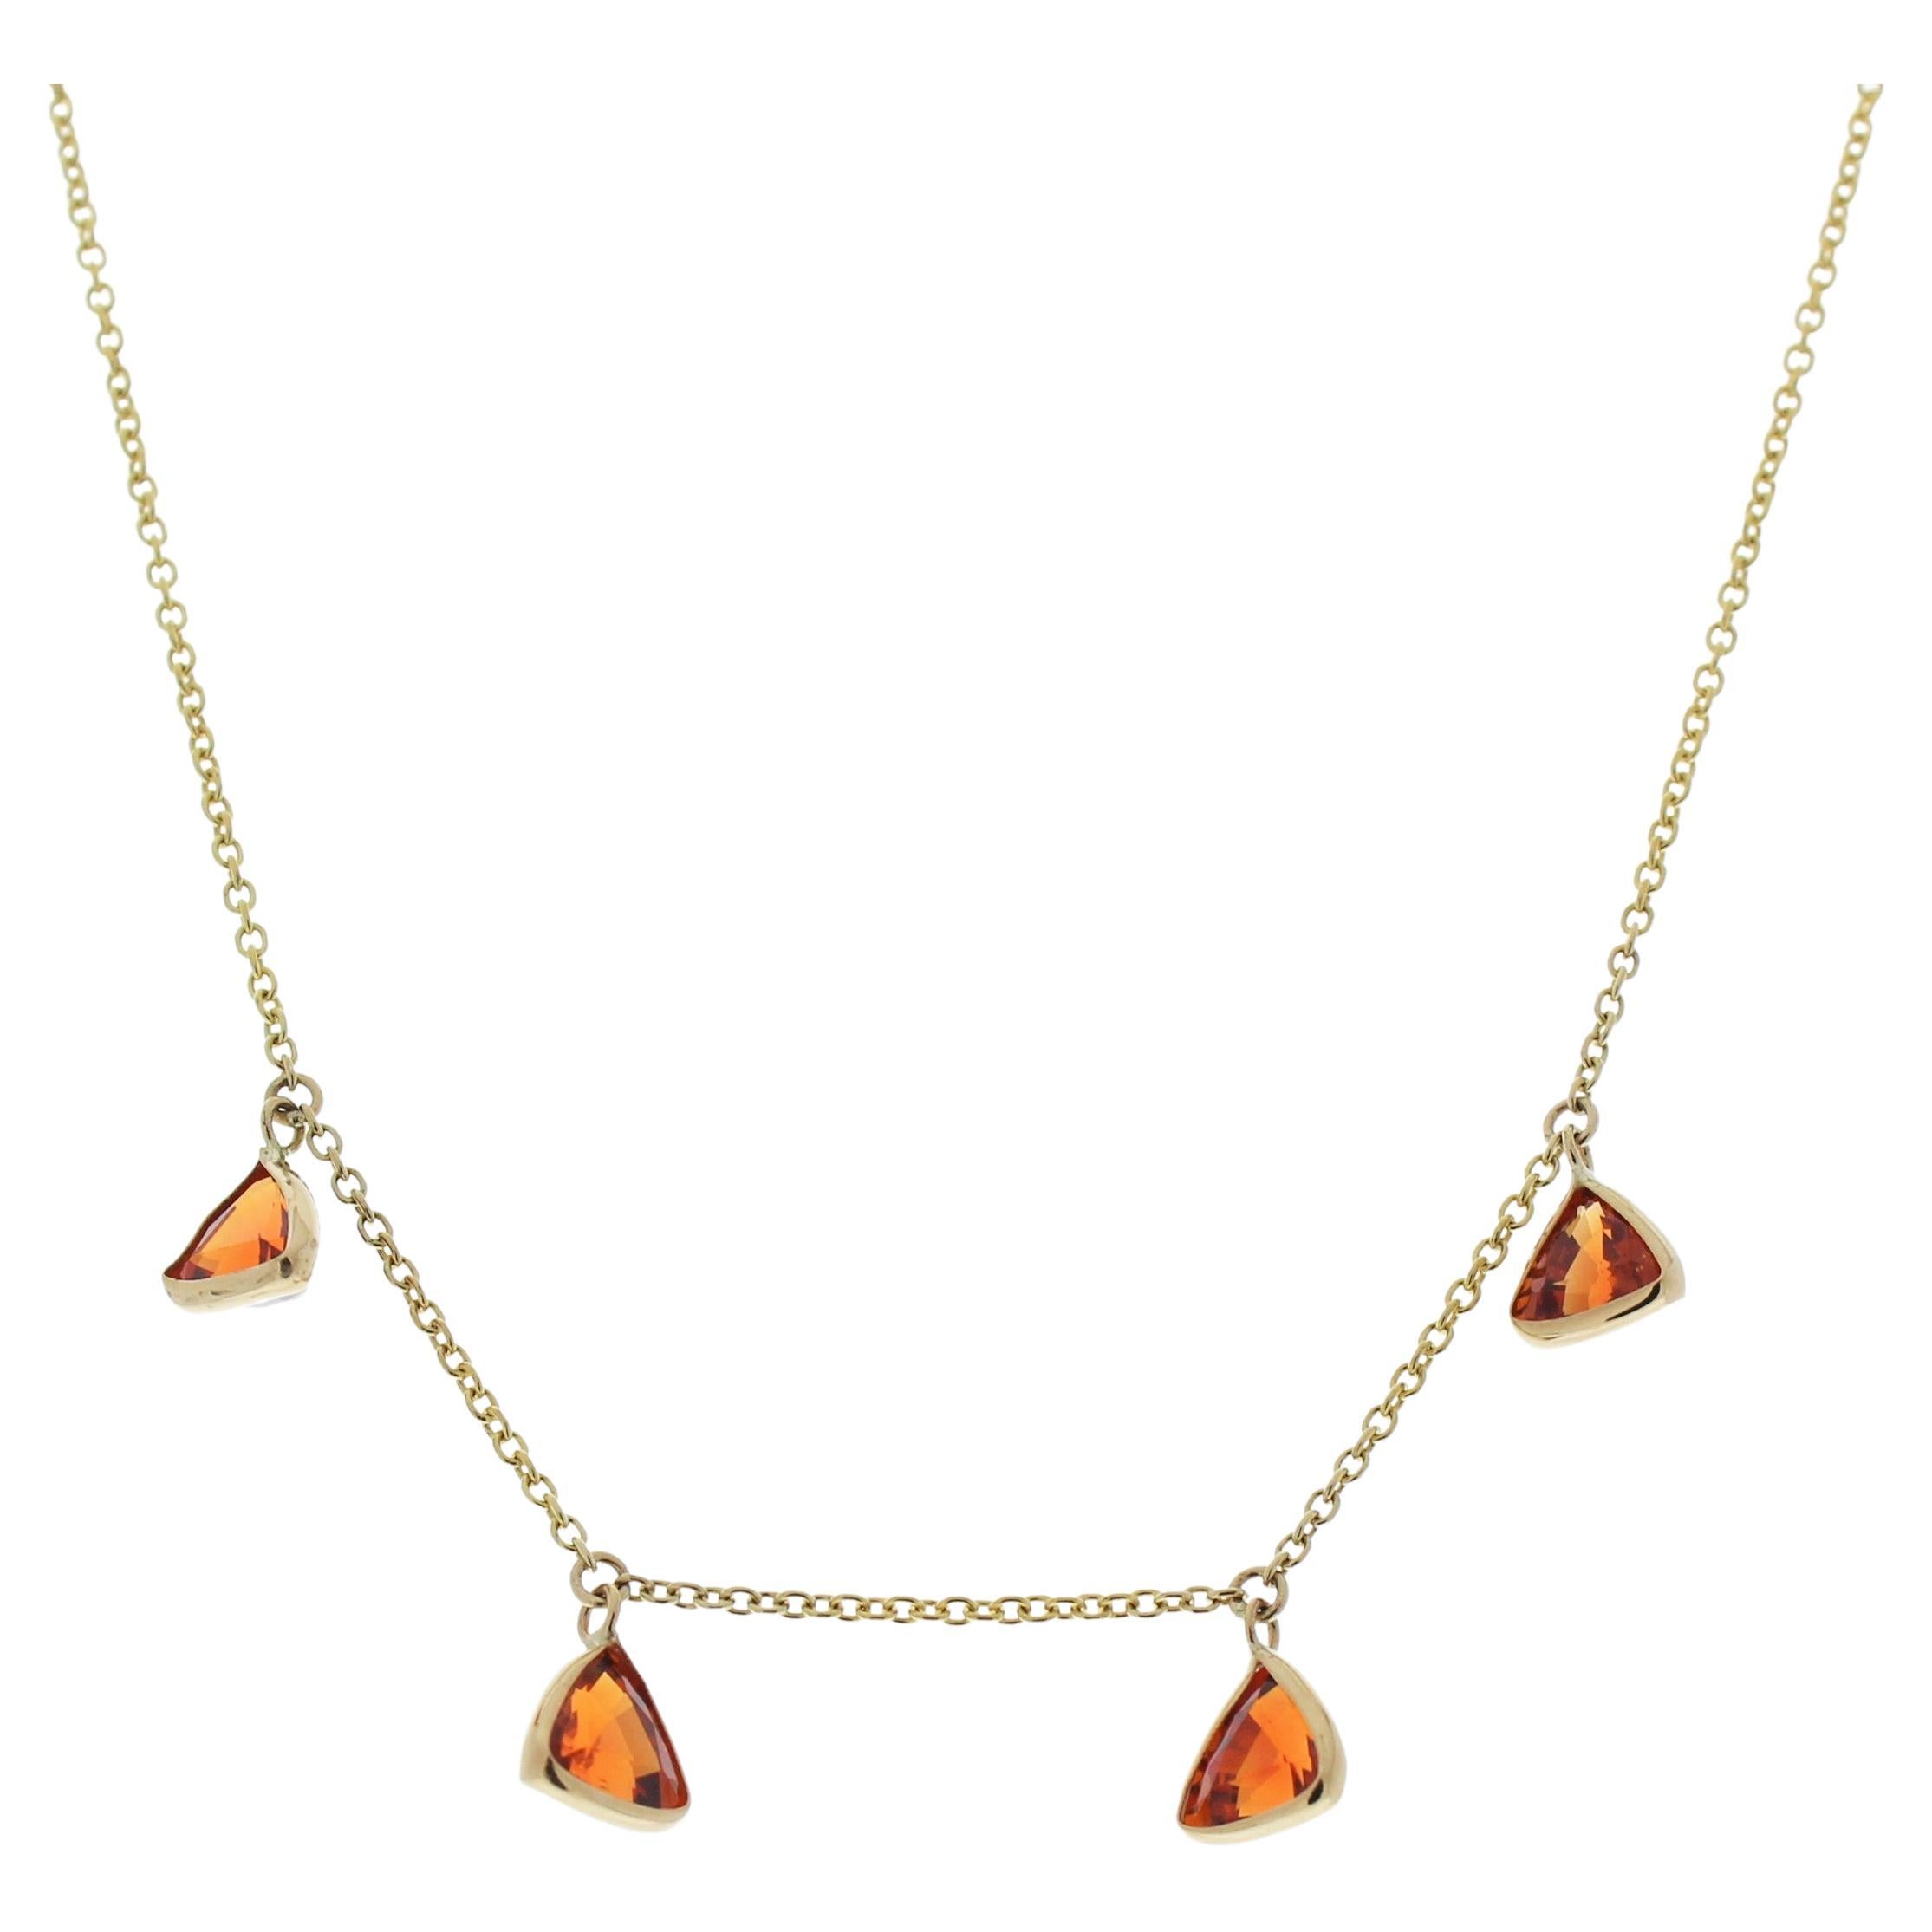 3.55 Carat Spessartite Gemstone Orangy Red Handmade Solitaire Necklace In 14k YG